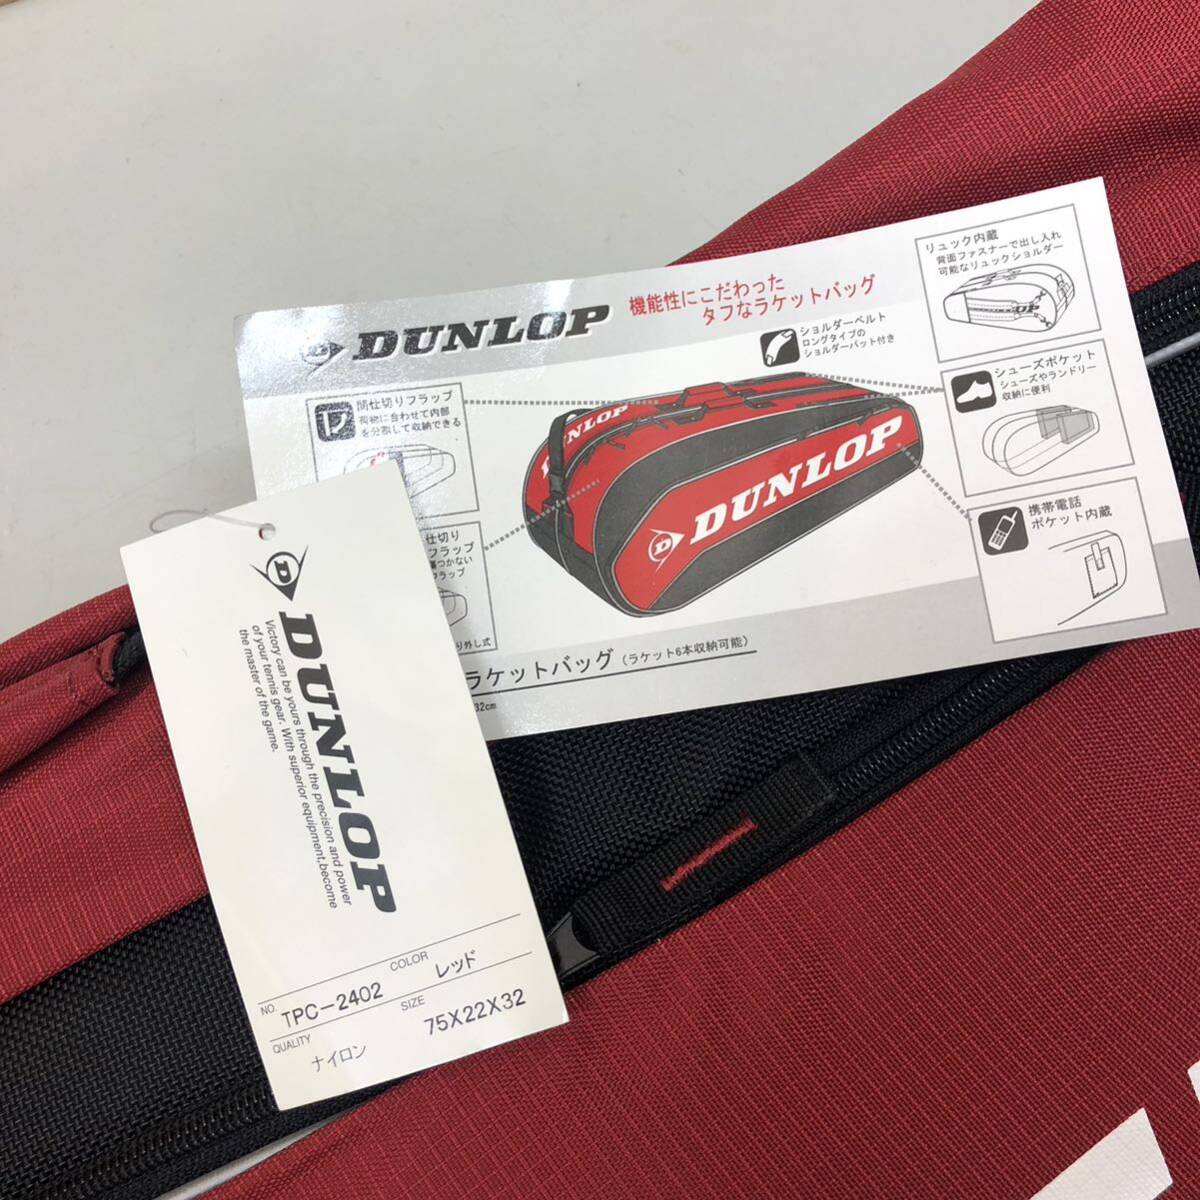 18 DUNLOP TPC-2402 red racket bag used unused long-term keeping goods tennis tennis bag racket 